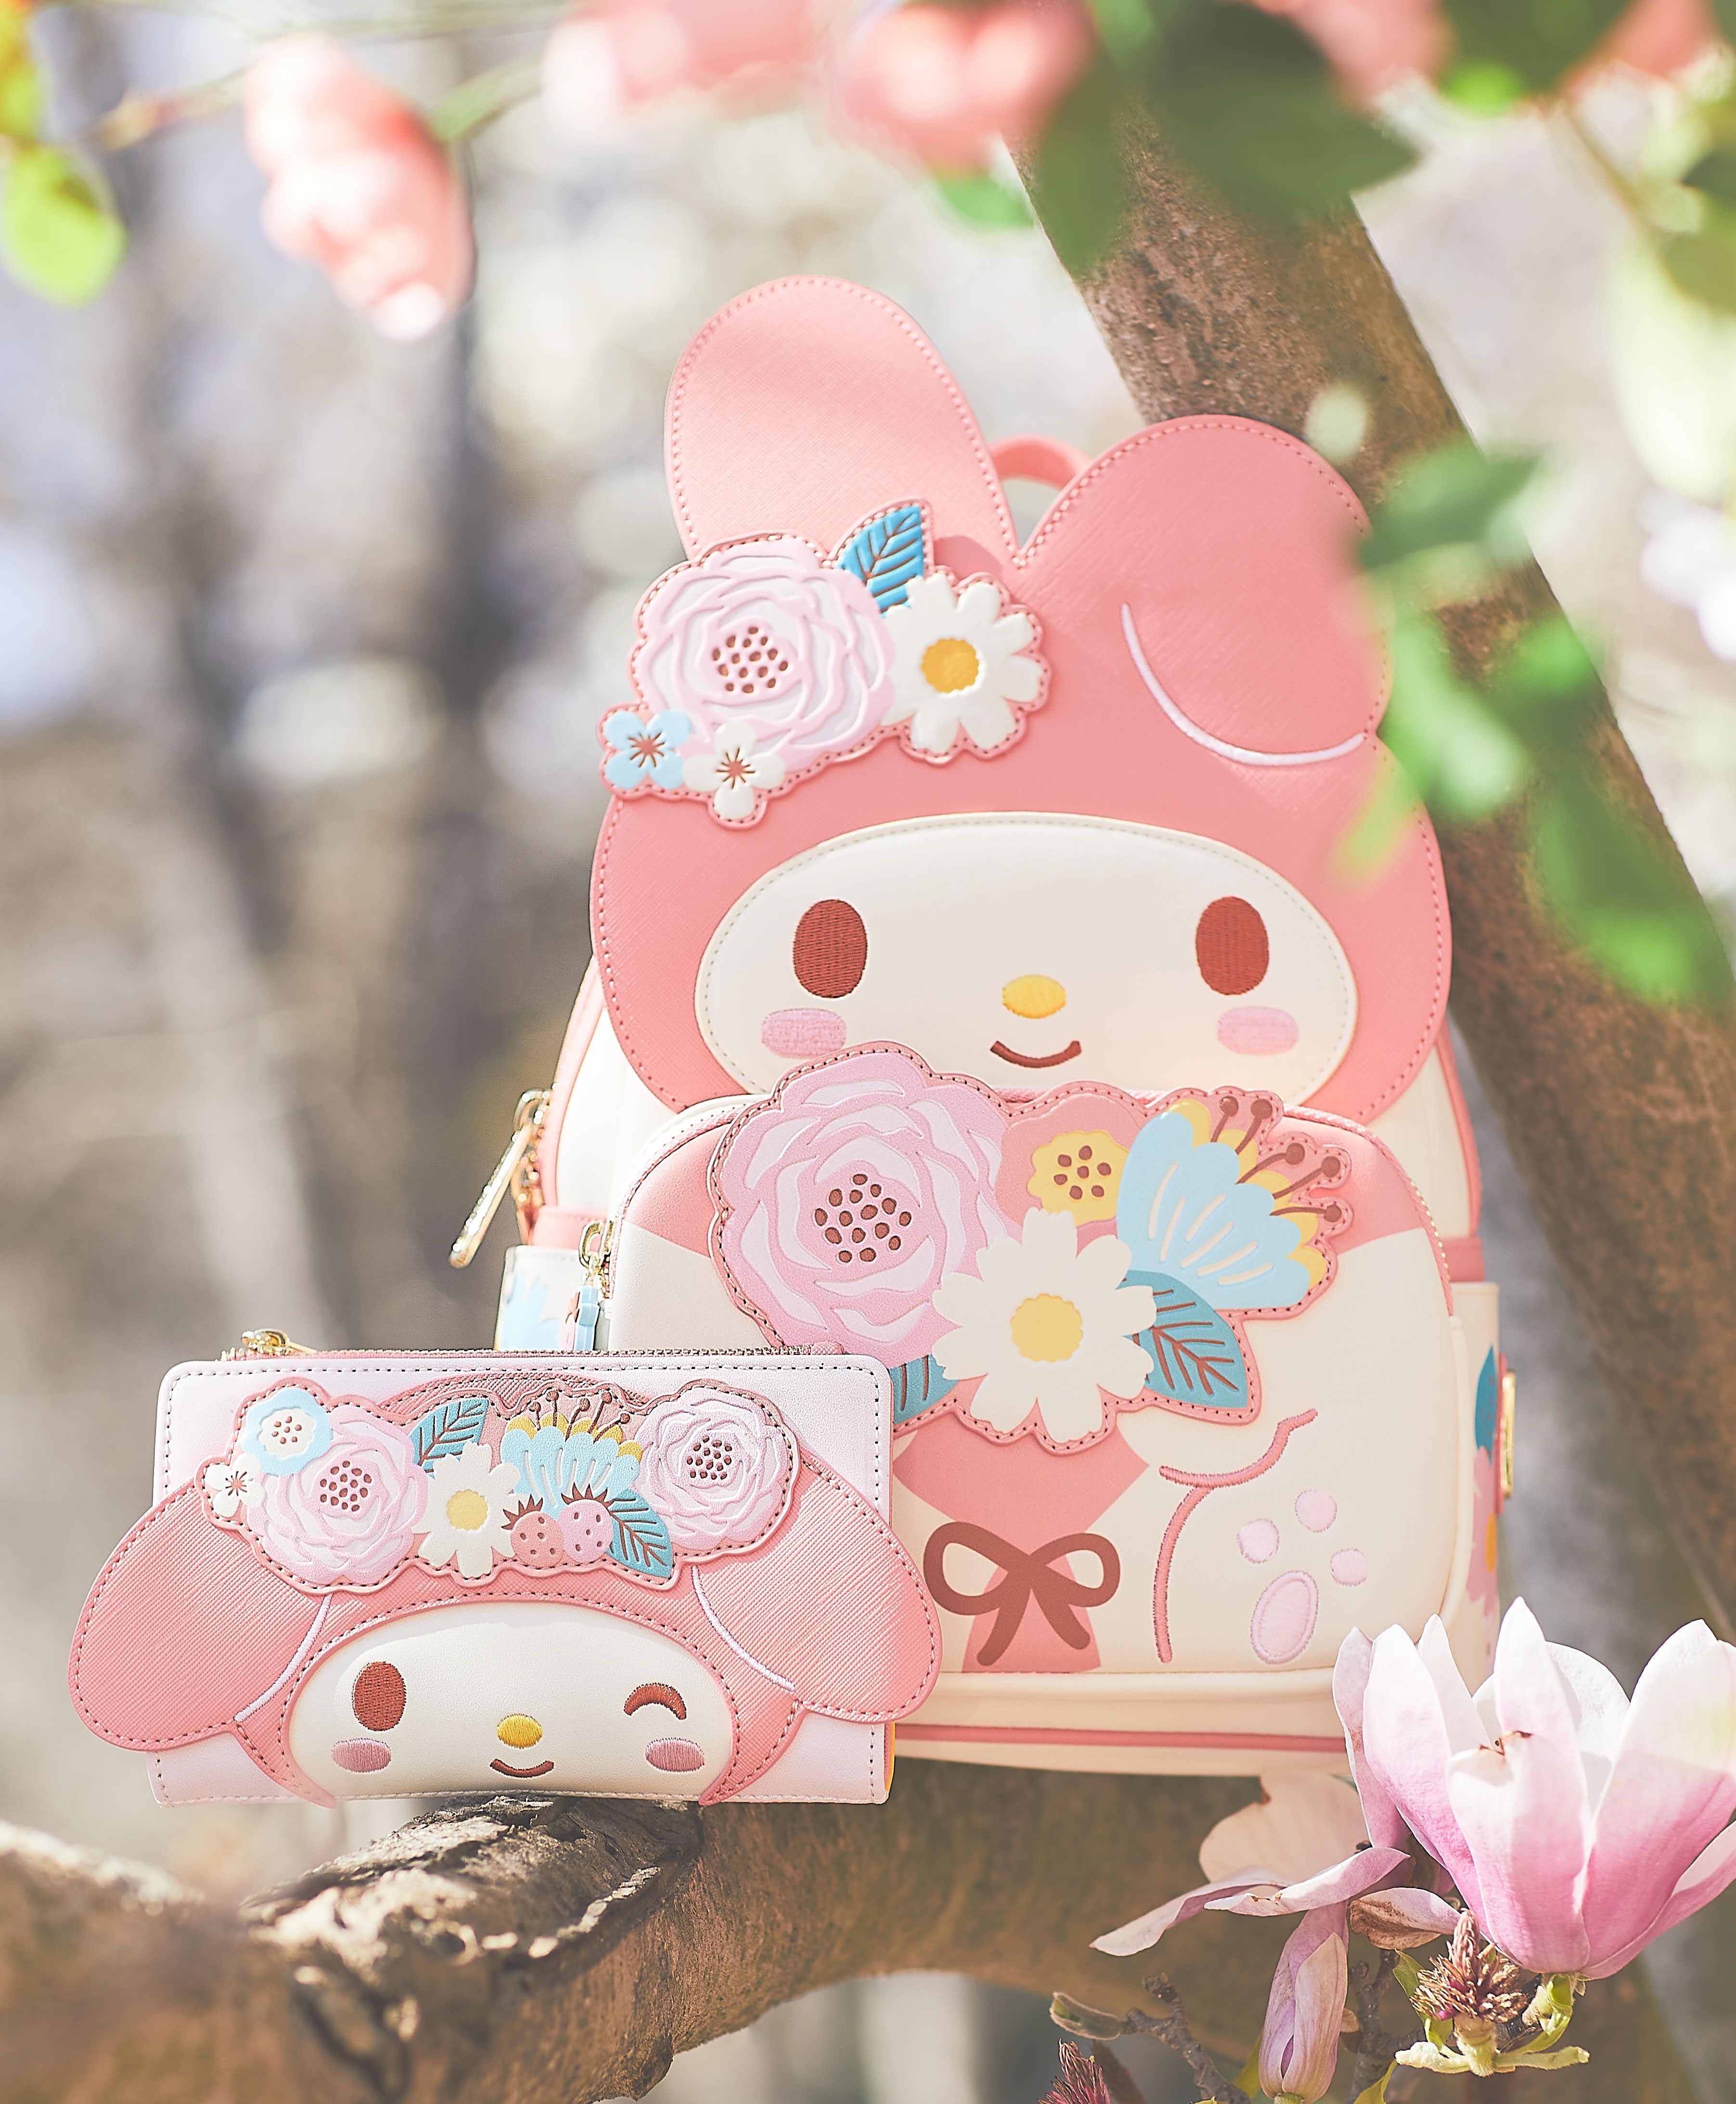 ЭКСКЛЮЗИВ: Hello Kitty выпускает совершенно новую цветочную коллекцию к 50-летию